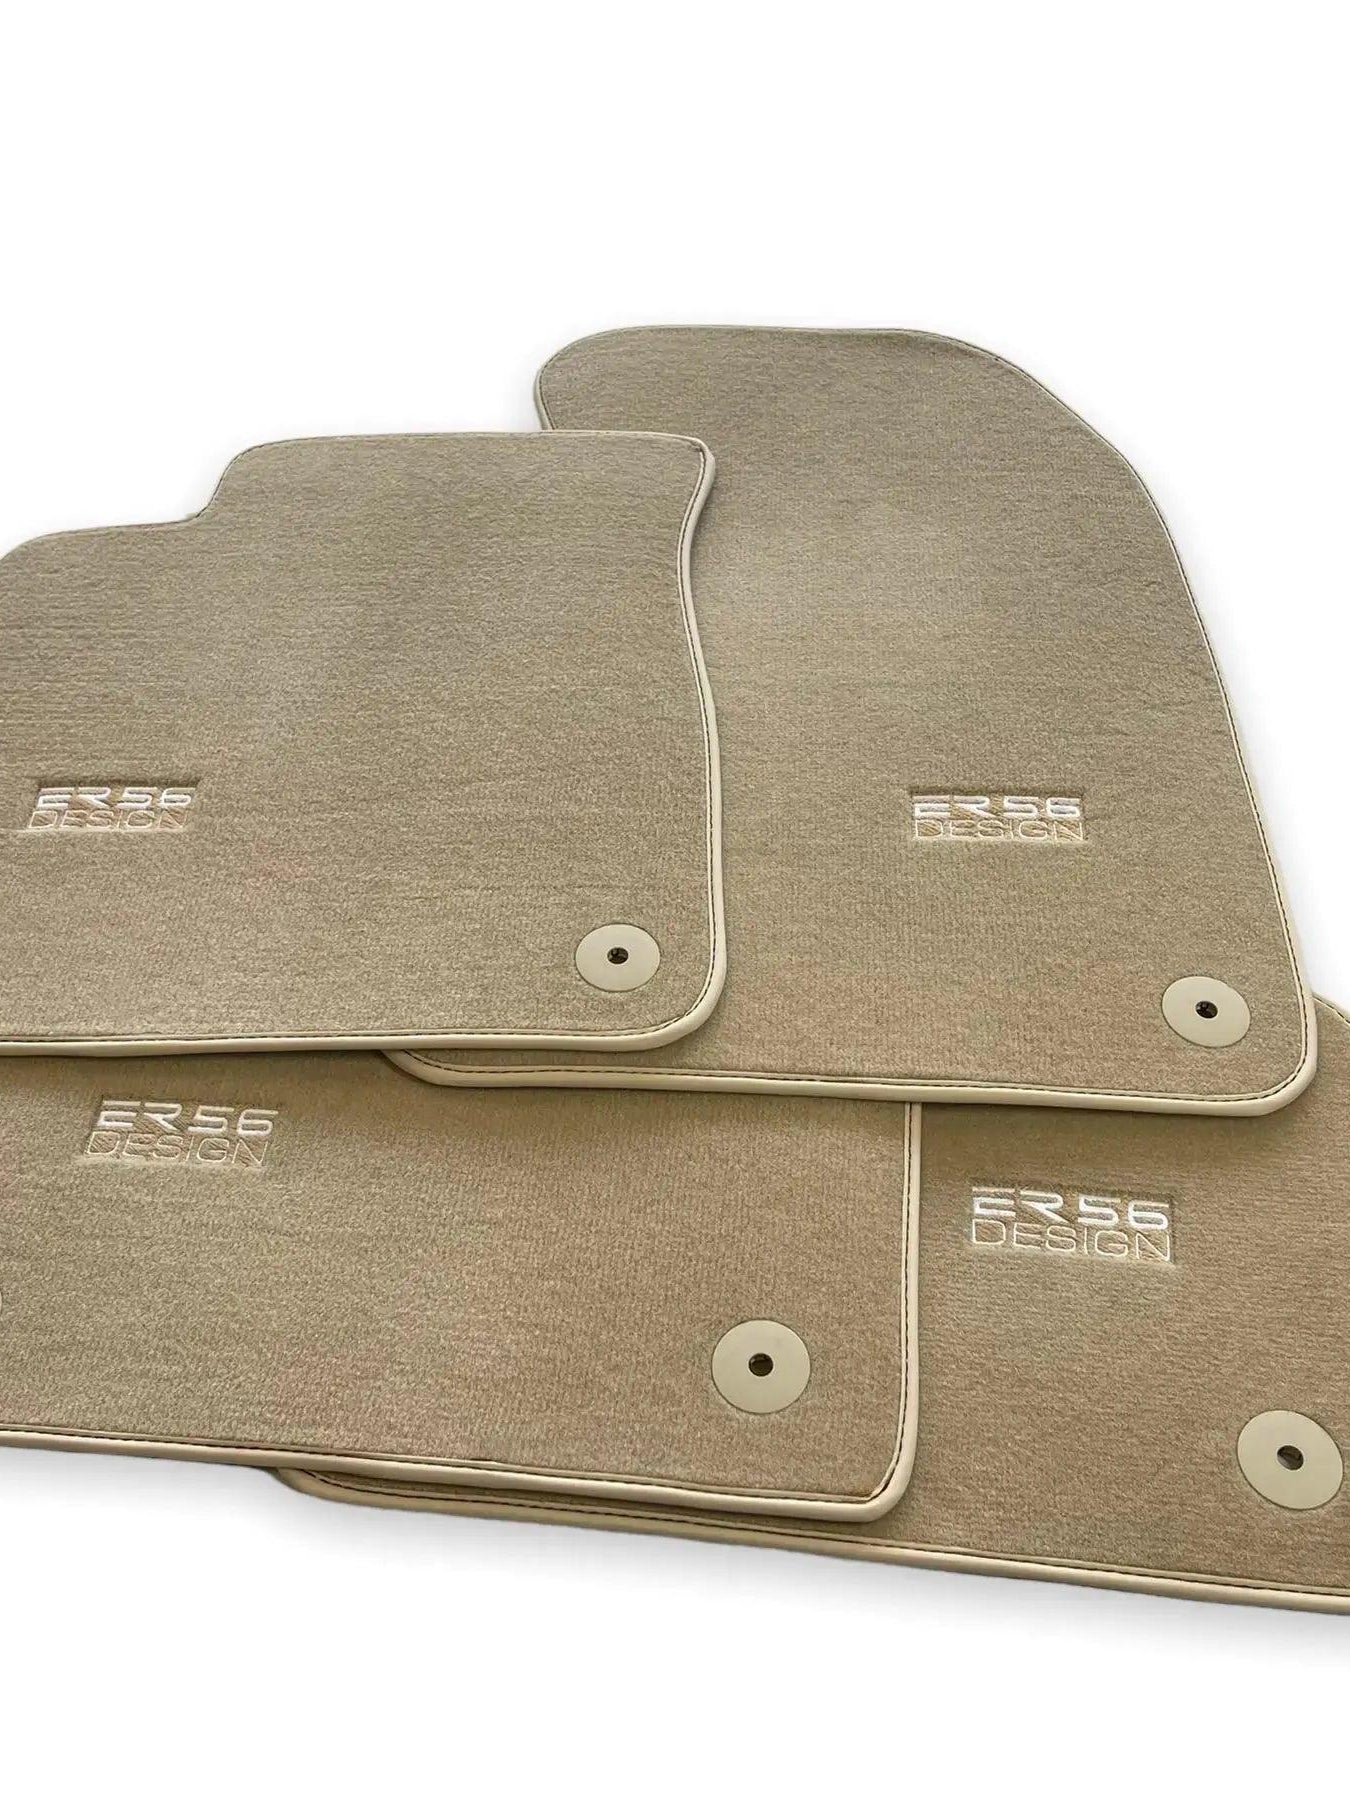 Beige Floor Mats for Audi A5 - F57 Convertible (2017-2020) | ER56 Design - AutoWin